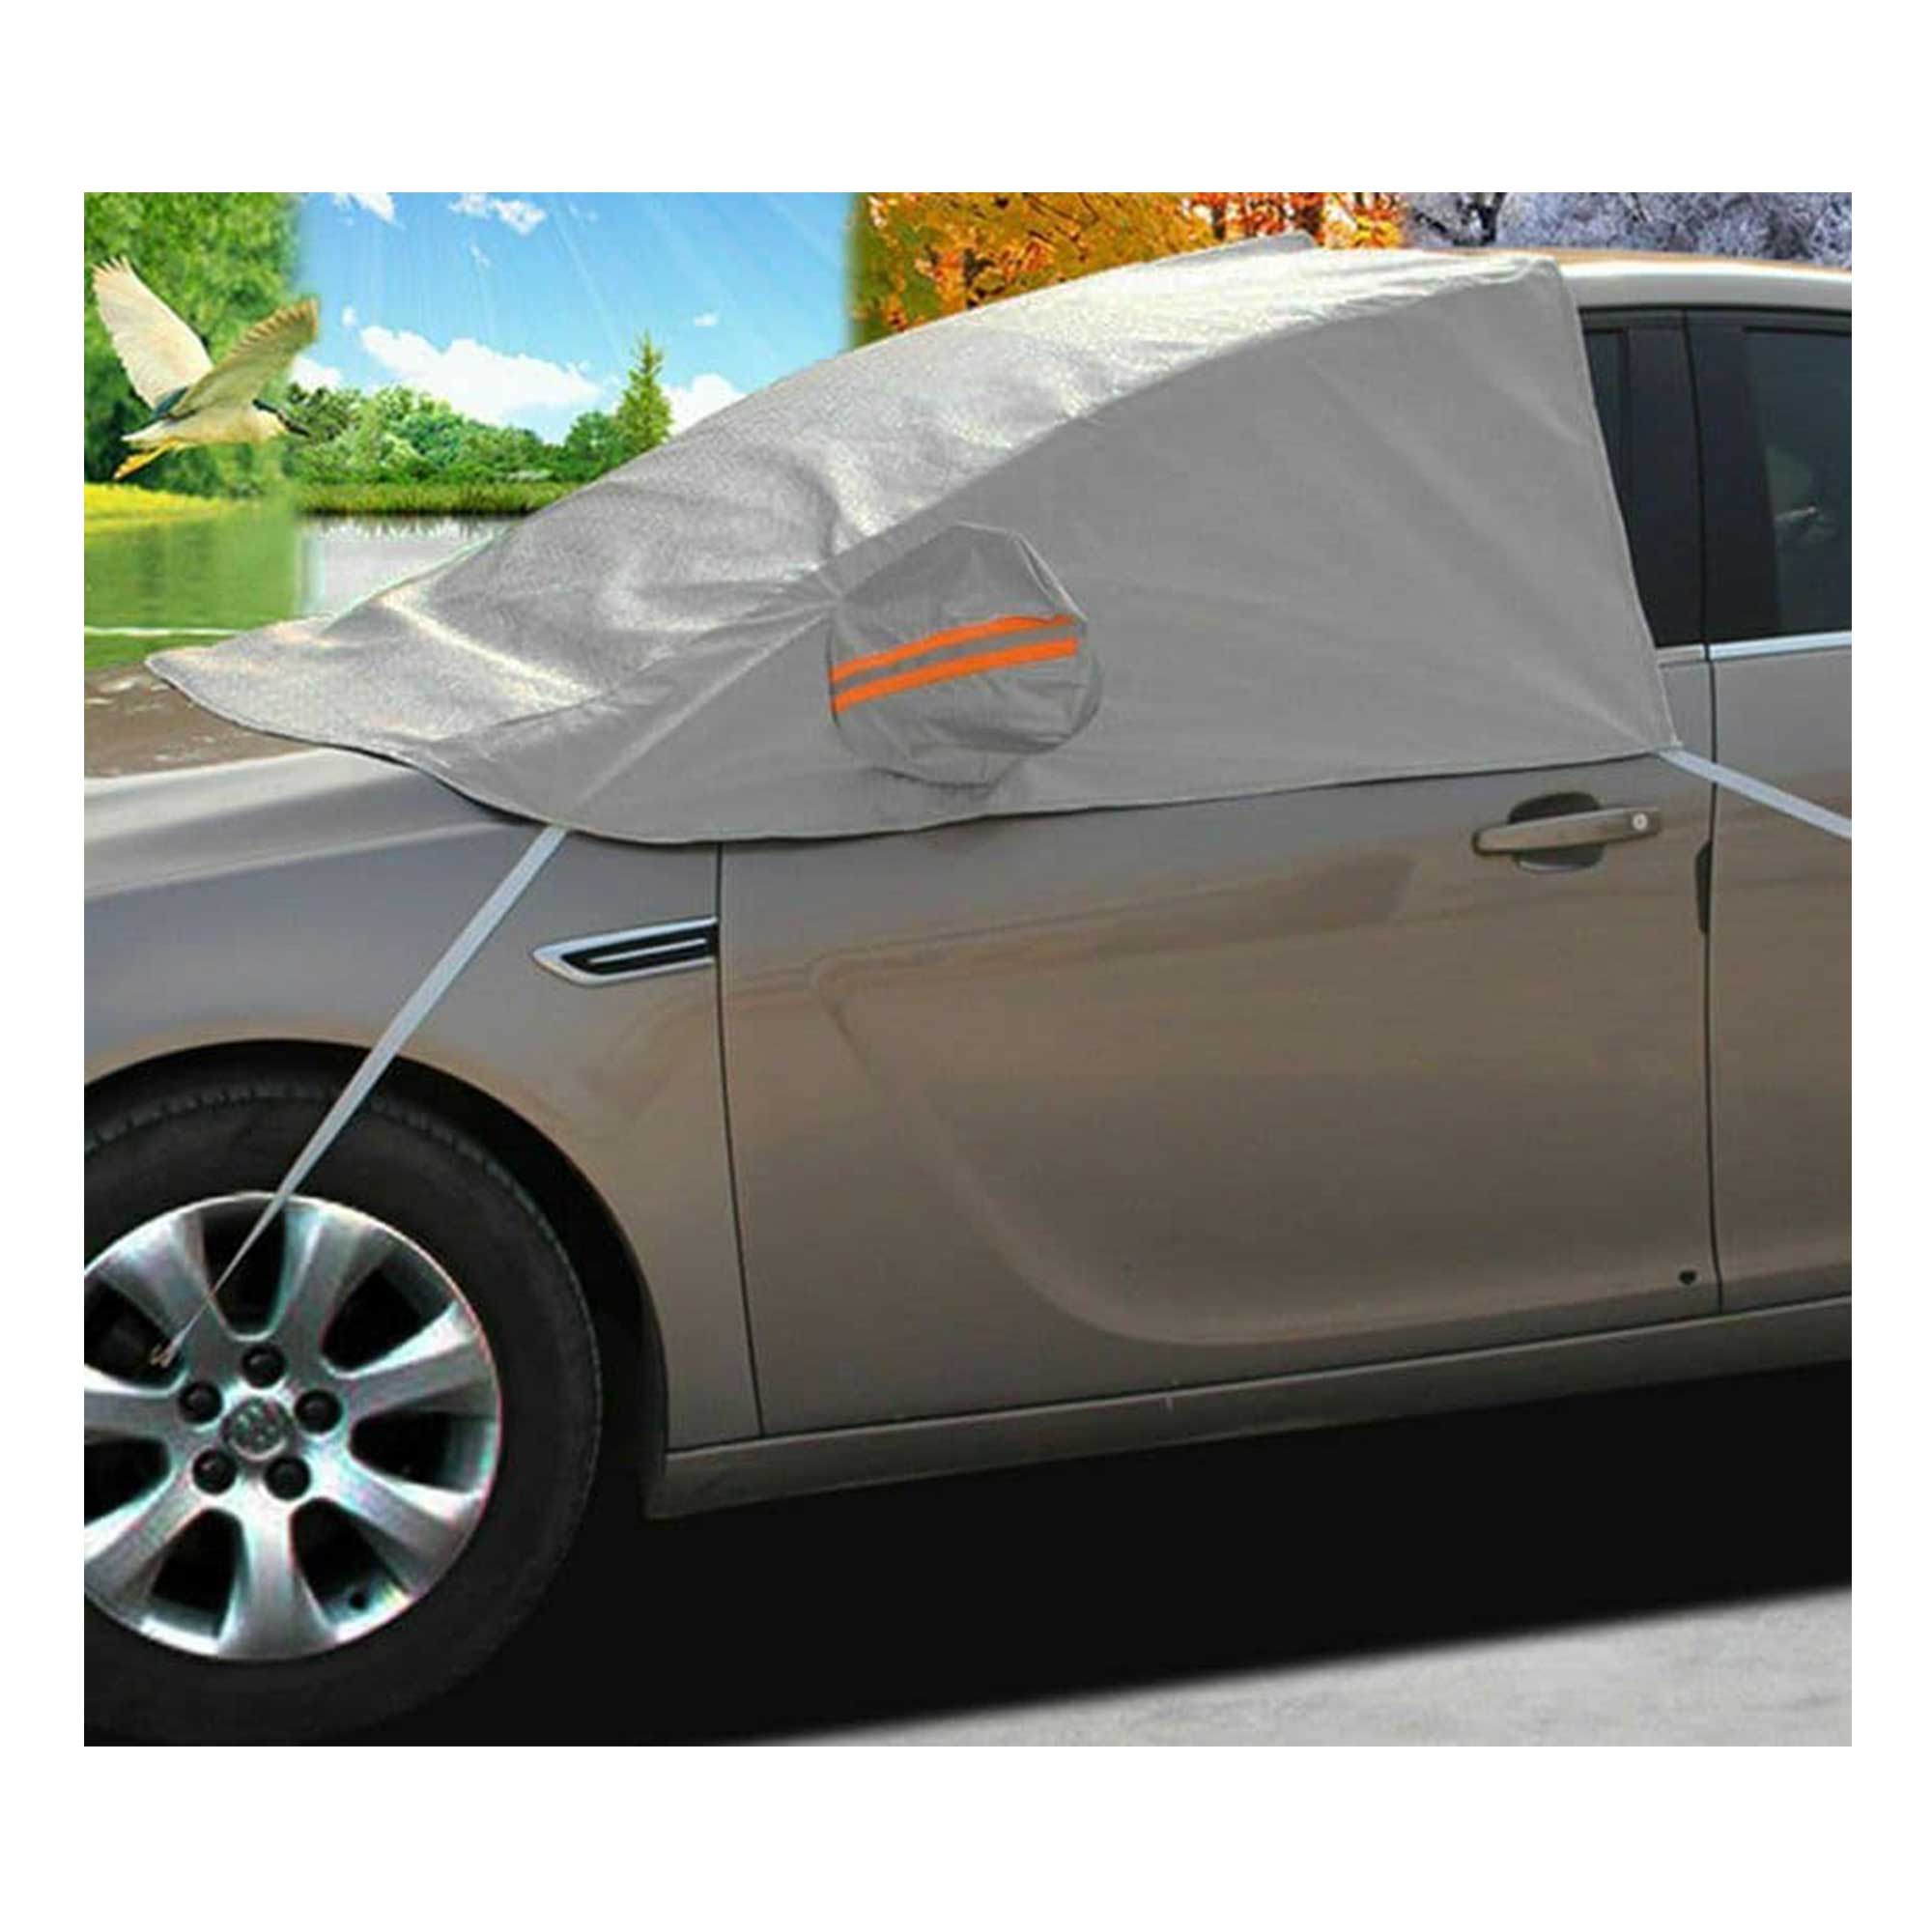 https://www.thecaravansupermarket.com/wp-content/uploads/2019/03/Car-Van-Front-Windscreen-Cover.jpg